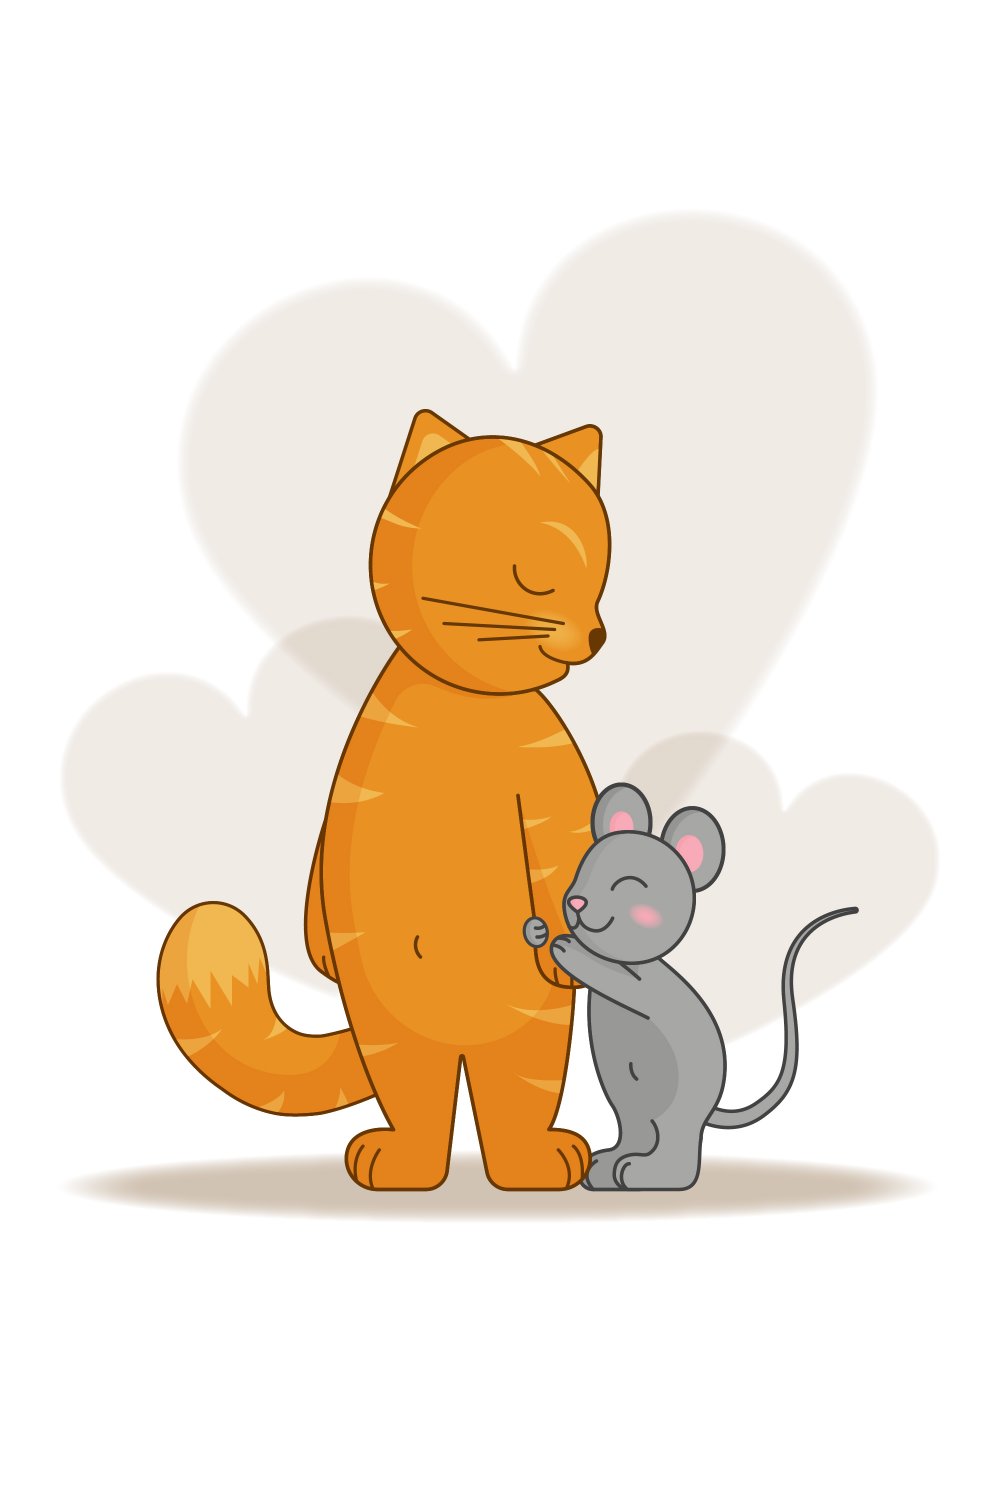 Кот и мышка обнимаются